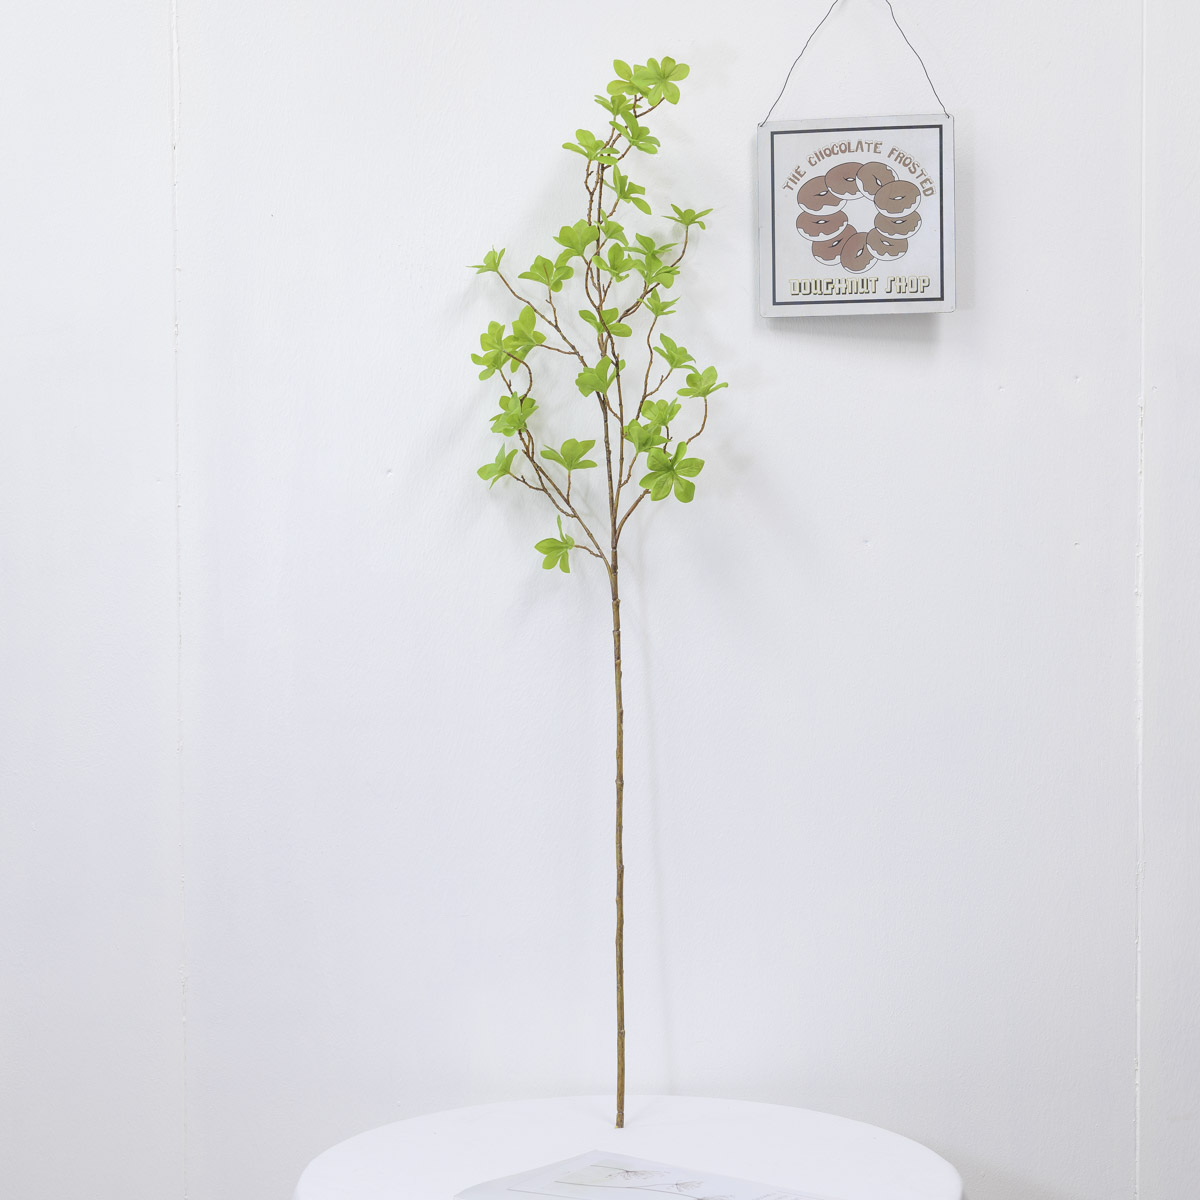 조화식물 엔카이셔스 나무 가지 110cm, 엔키안투스 잎사귀 그린조화 상품 다중이미지 썸네일